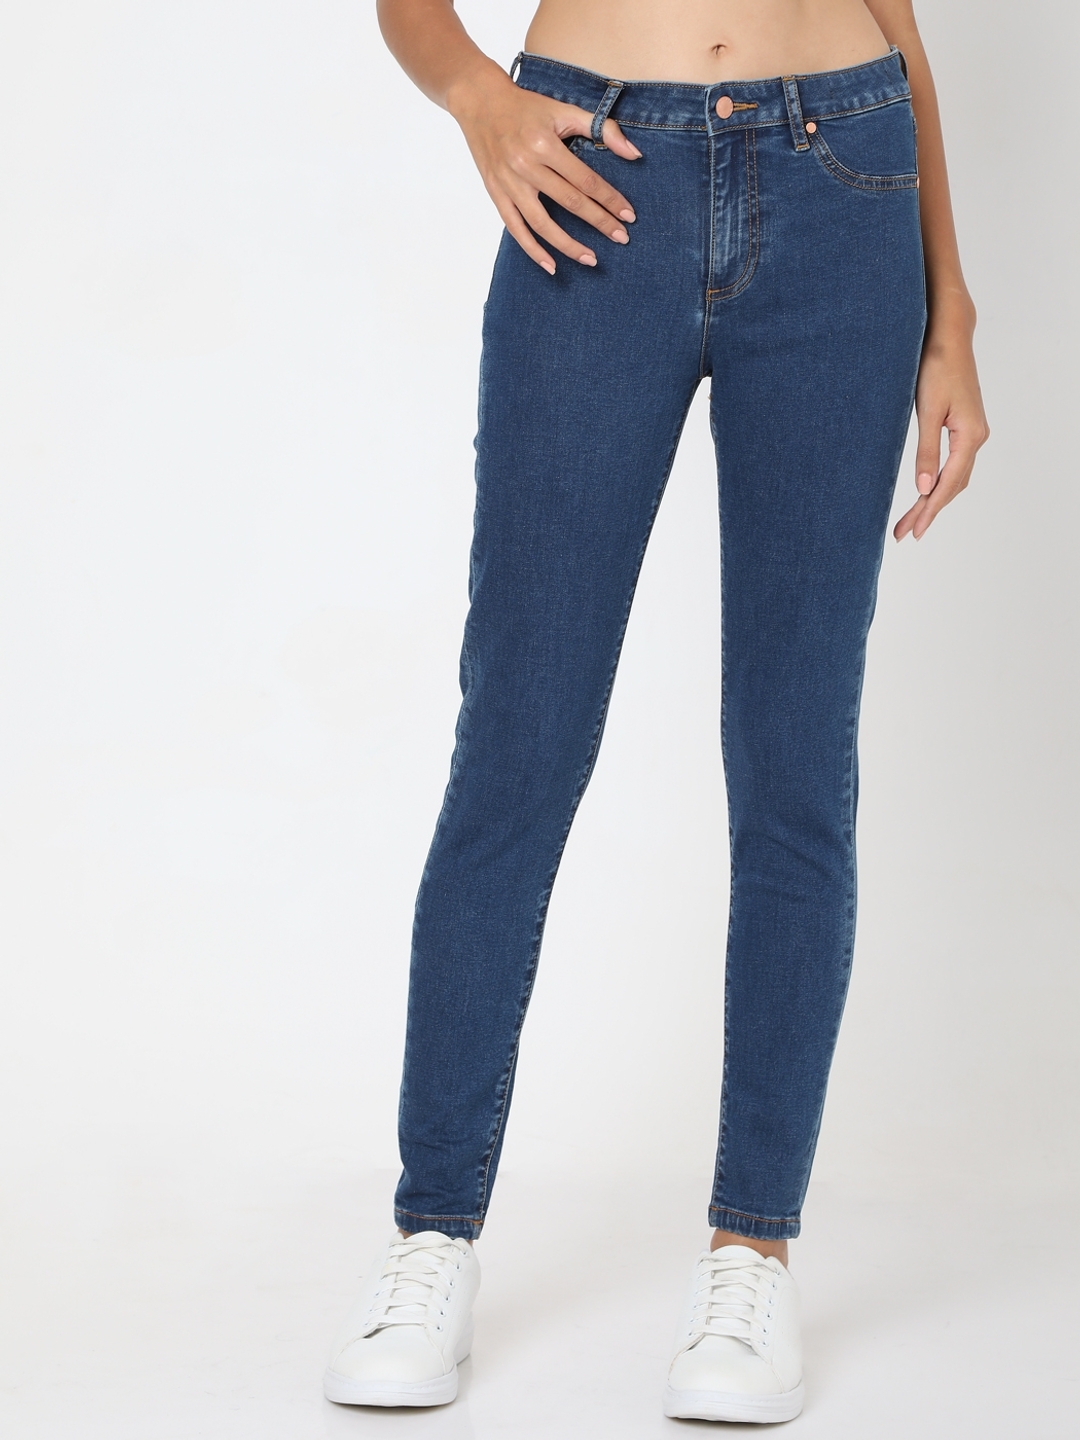 Share 184+ womens high waisted skinny jeans